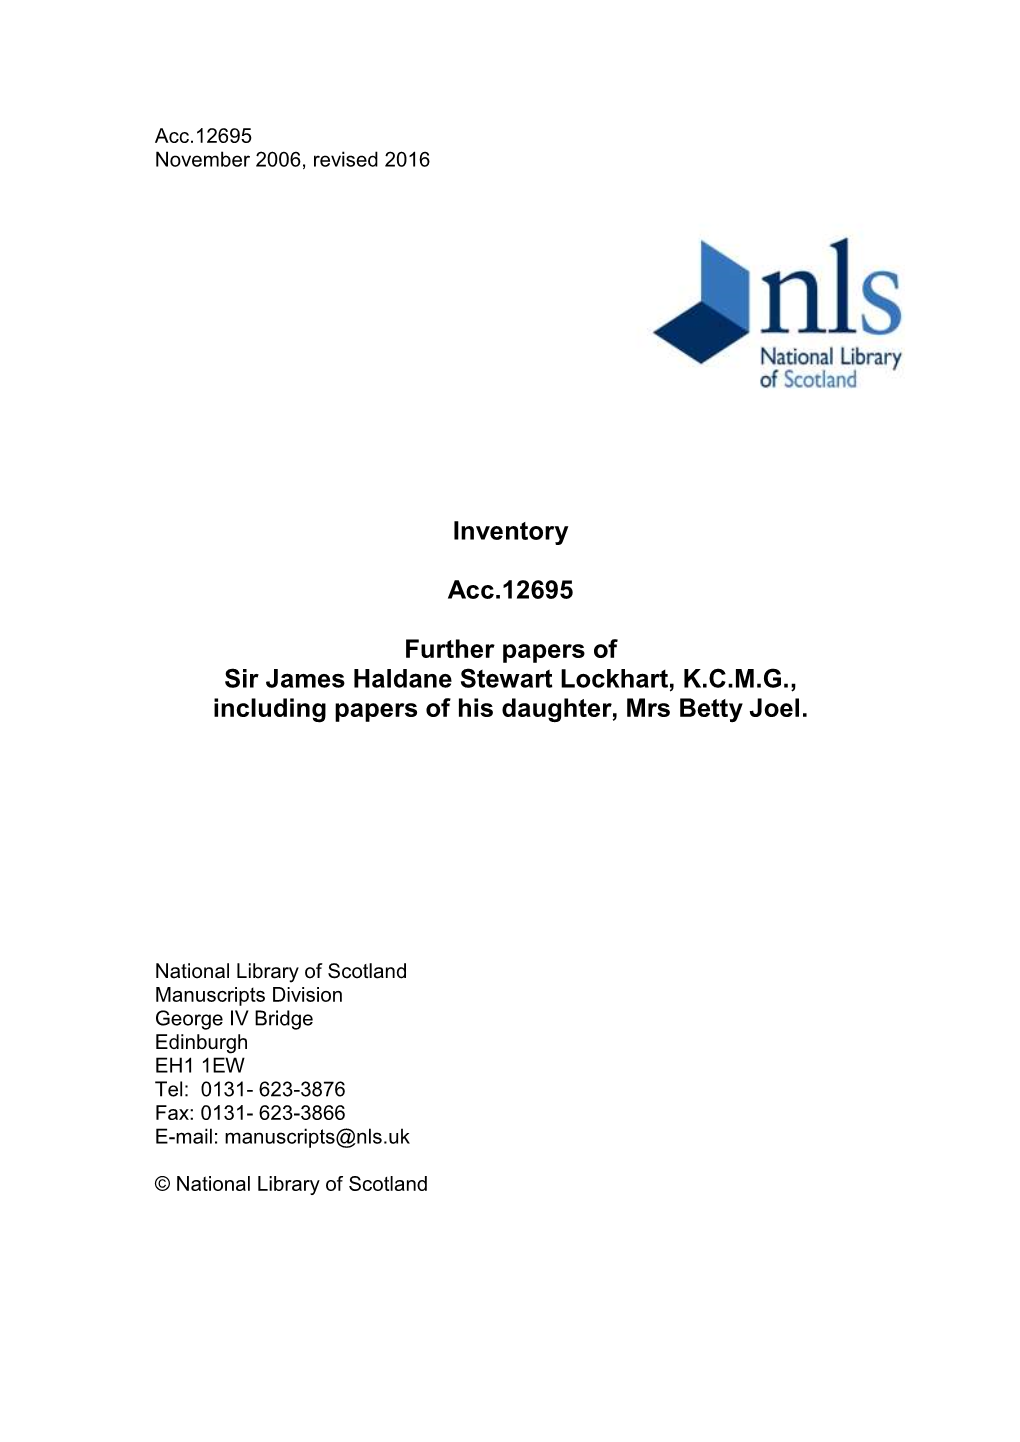 Inventory Acc.12695 Further Papers of Sir James Haldane Stewart